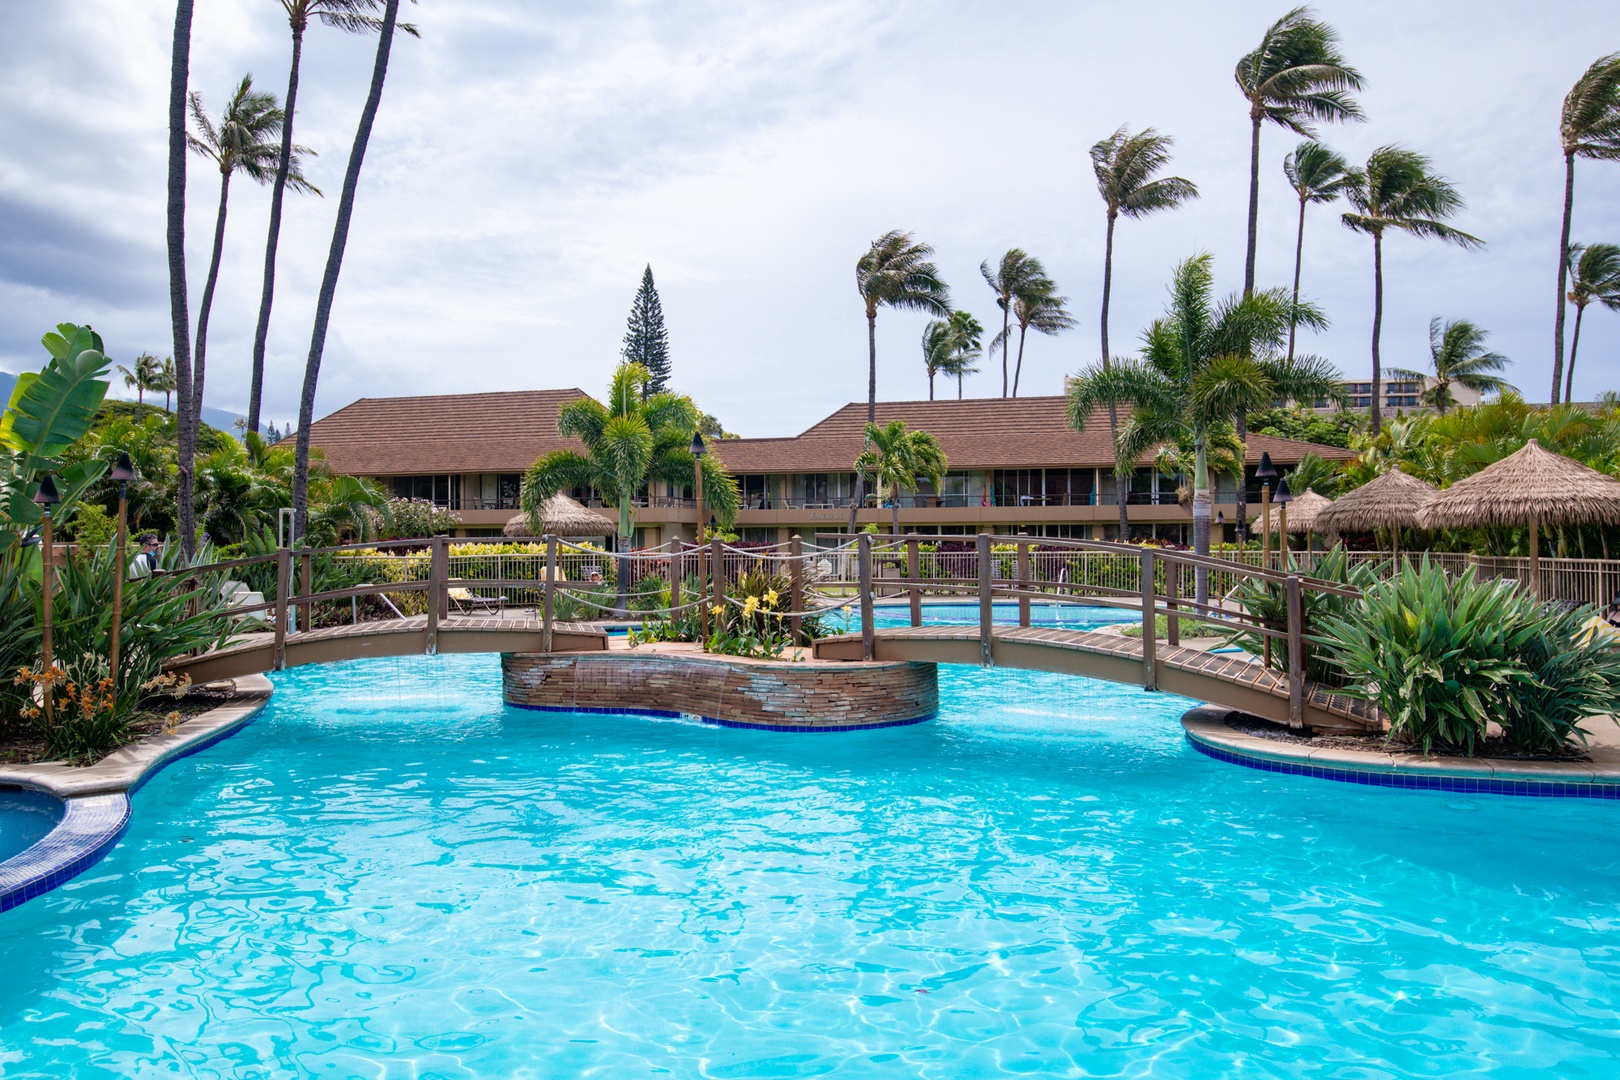 Lahaina Vacation Rentals, Maui Kaanapali Villas B225 - Pools 25 steps away from Kaanapali beach